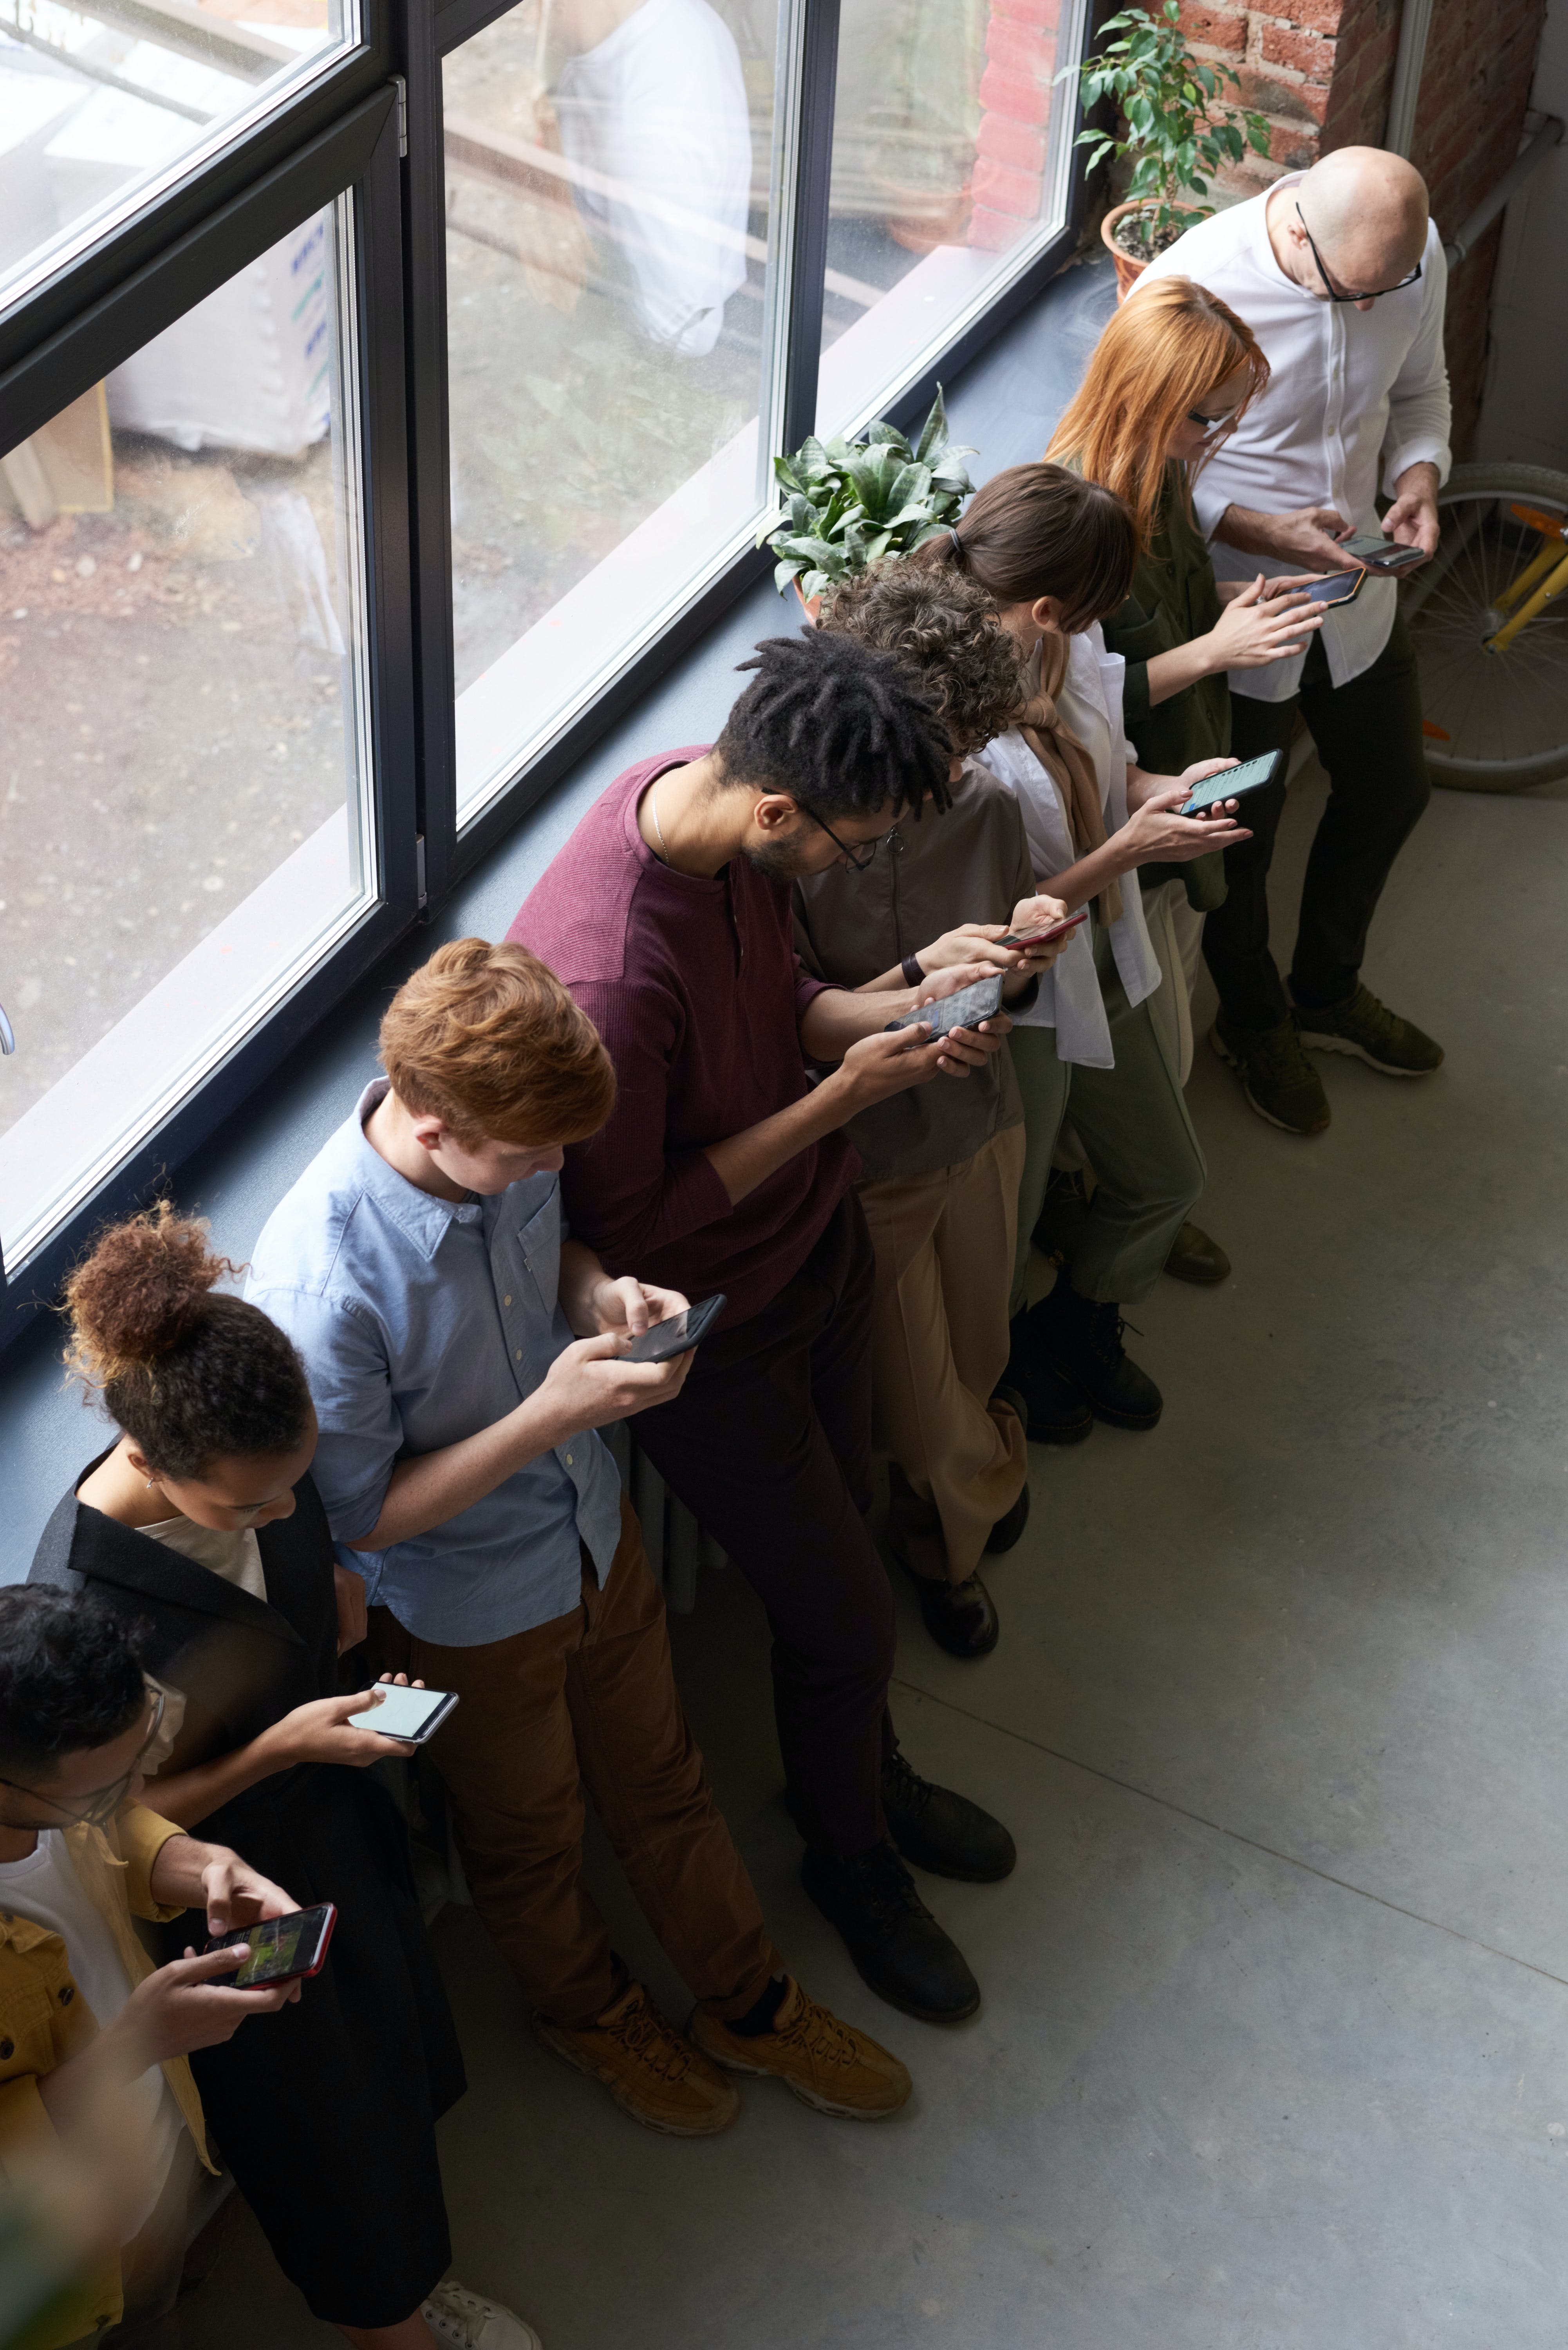 Menschen stehen in einer Warteschlange und bedienen ihre Smartphones. | Quelle: Pexels